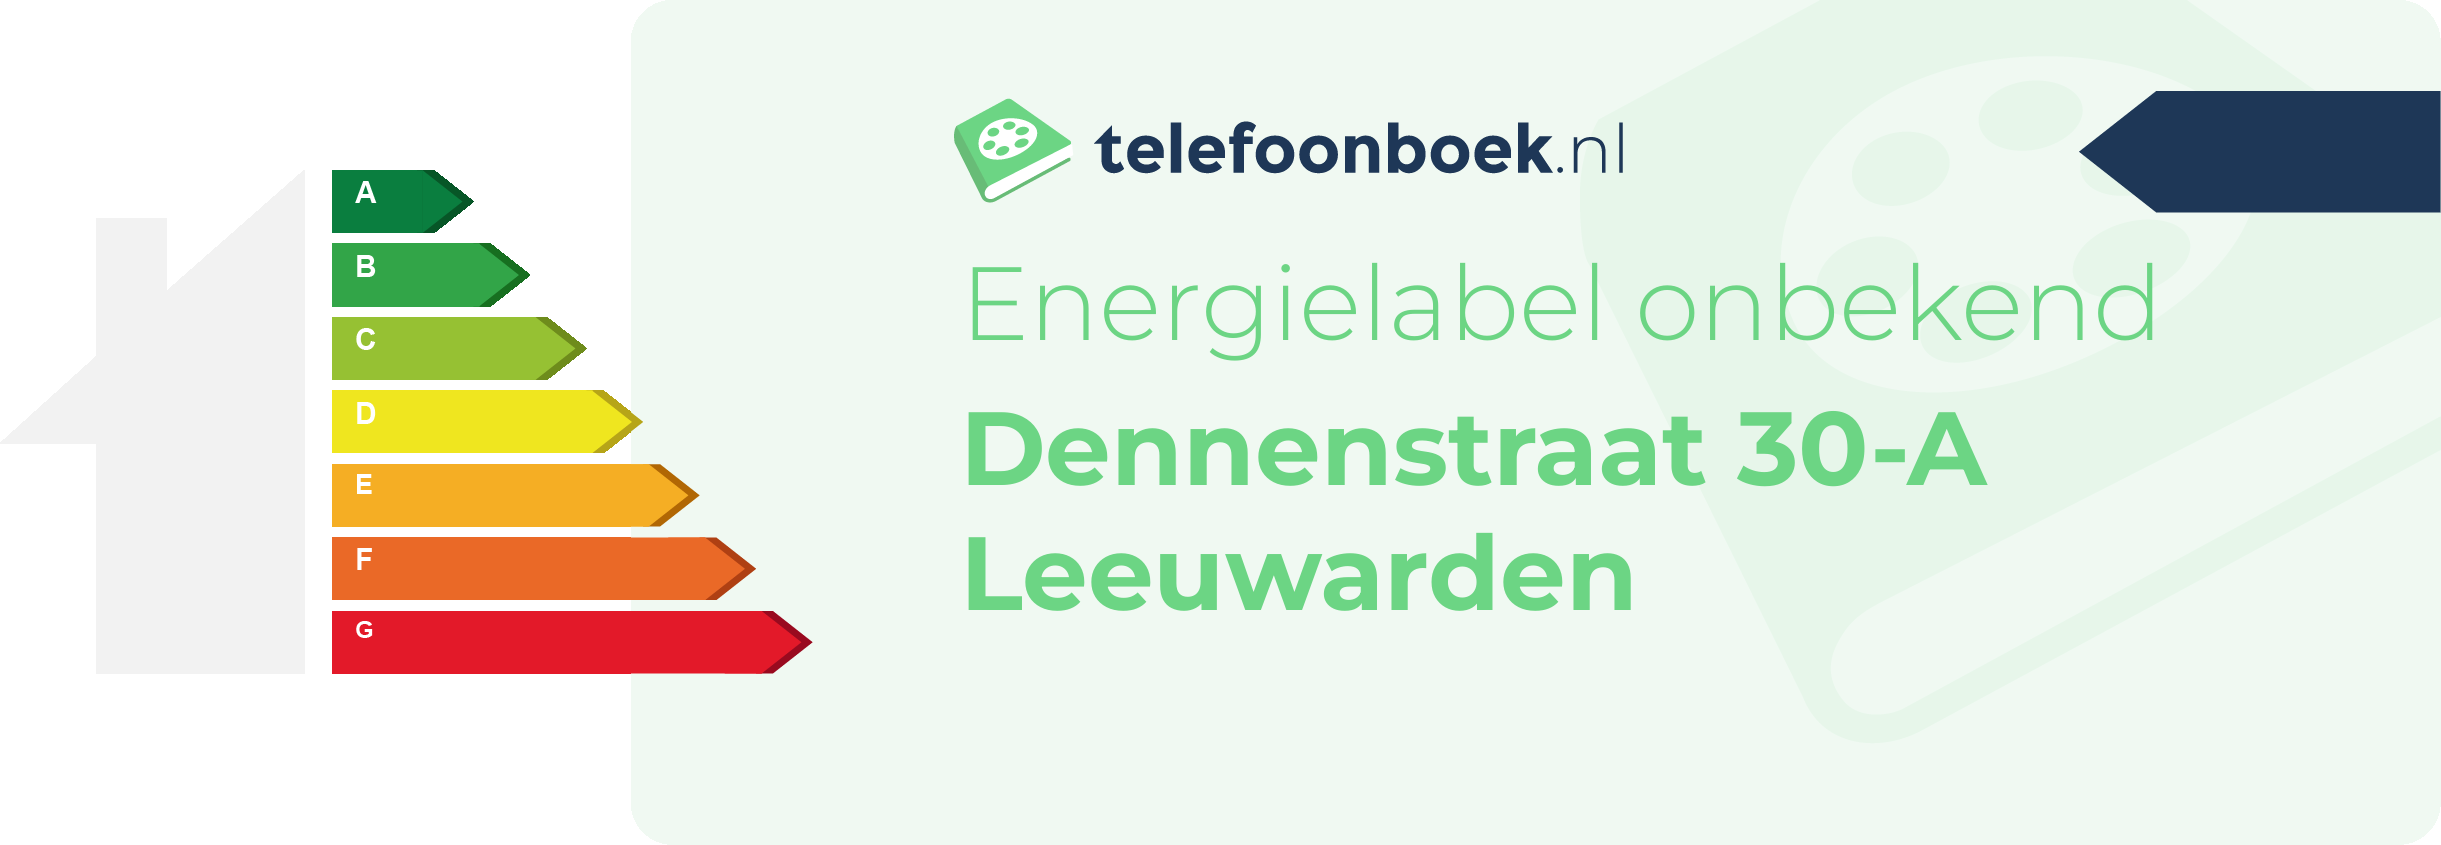 Energielabel Dennenstraat 30-A Leeuwarden